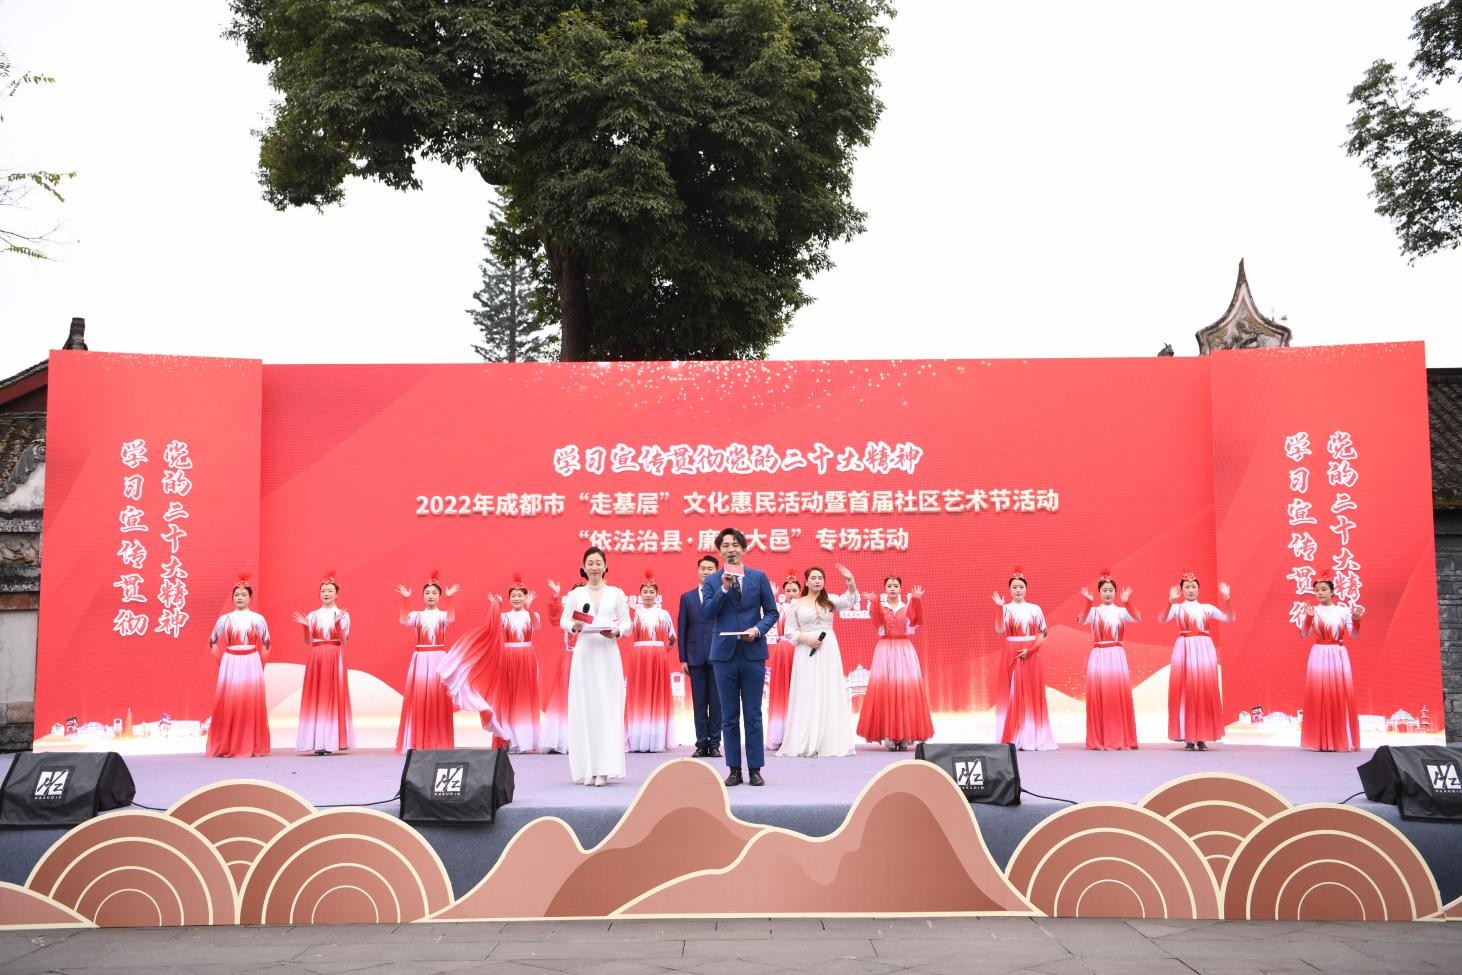 2022年成都市“走基层”文化惠民活动暨首届社区艺术节活动 在安仁古镇举行